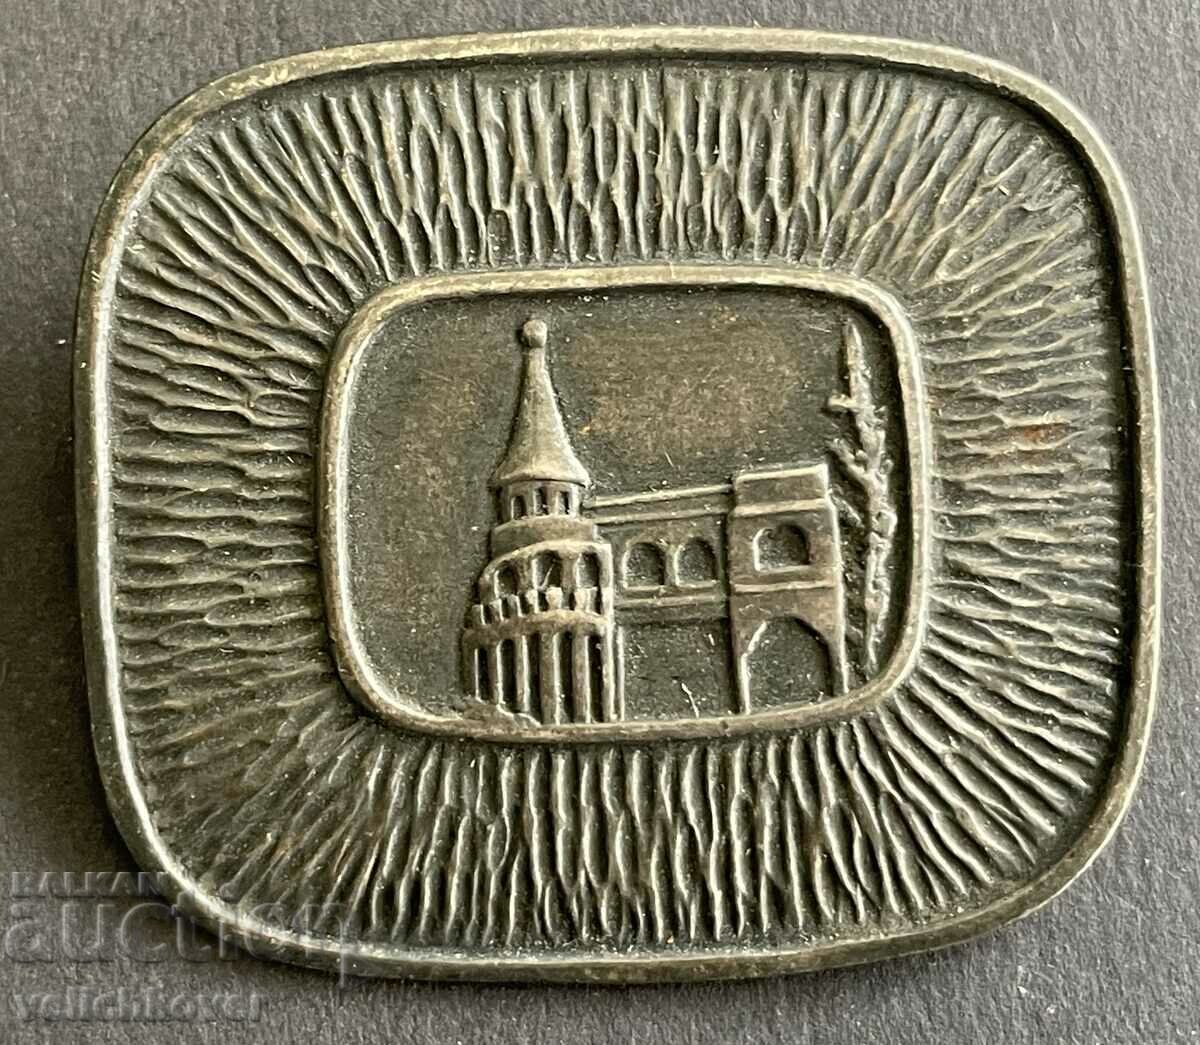 37446 Broșă Insigna Ungaria Turnurile Pescarilor din Budapesta anii 1960